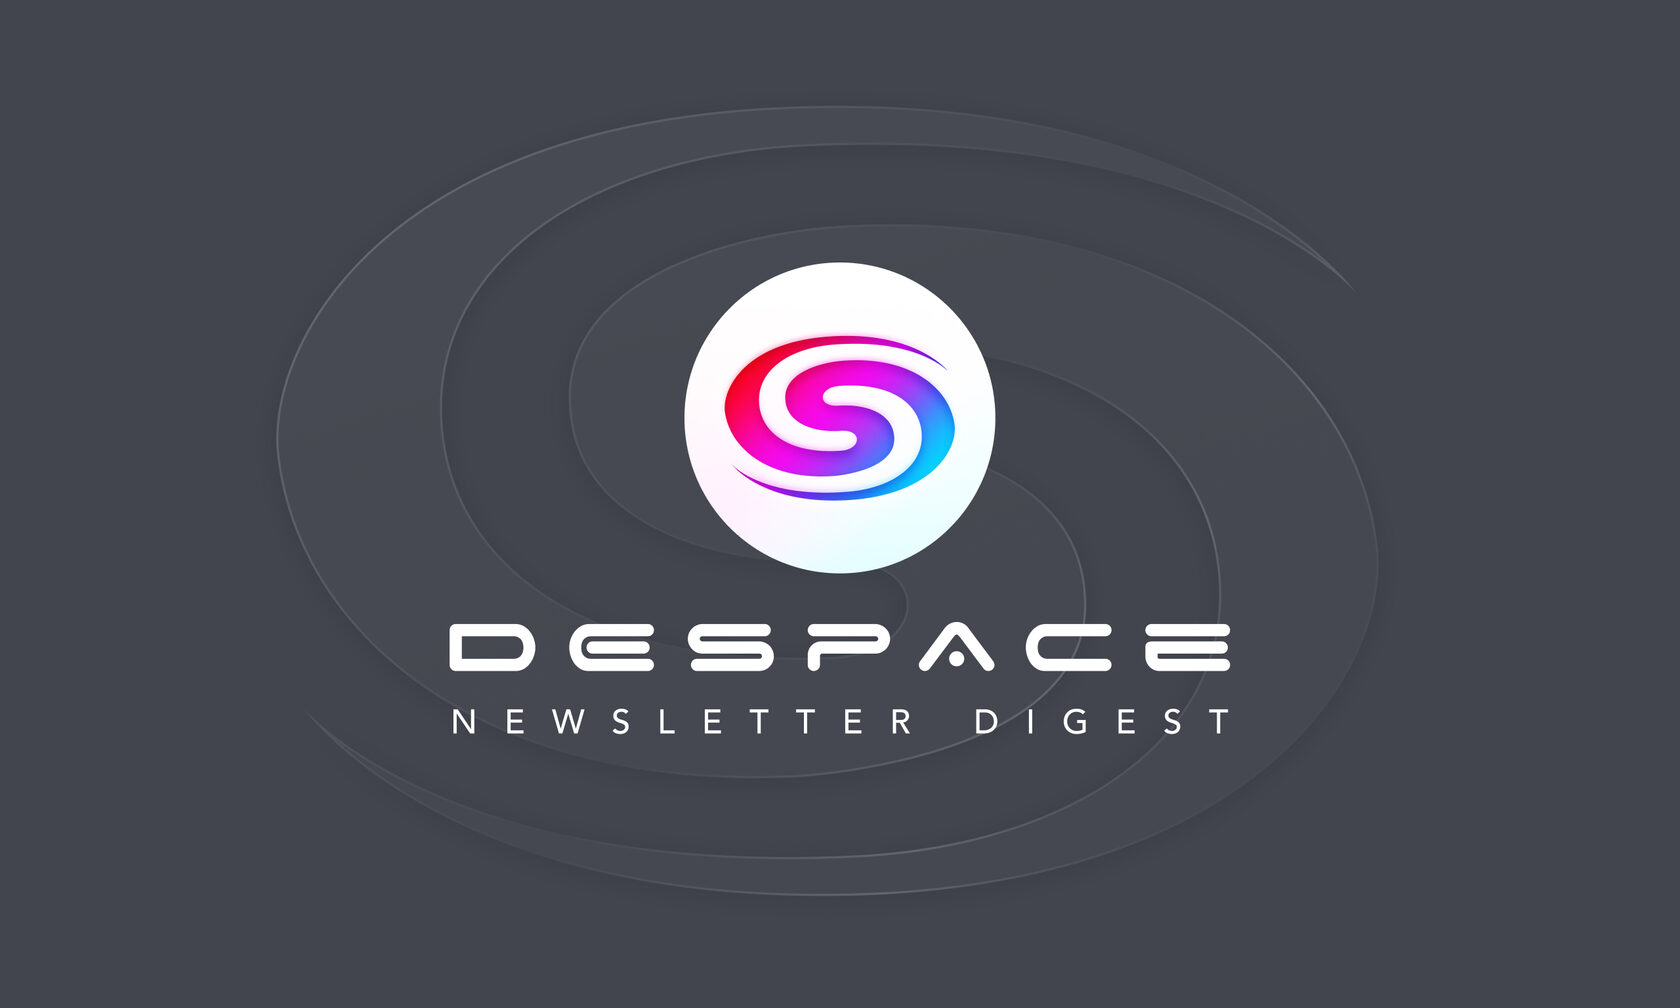 DeSpace Newsletter Digest